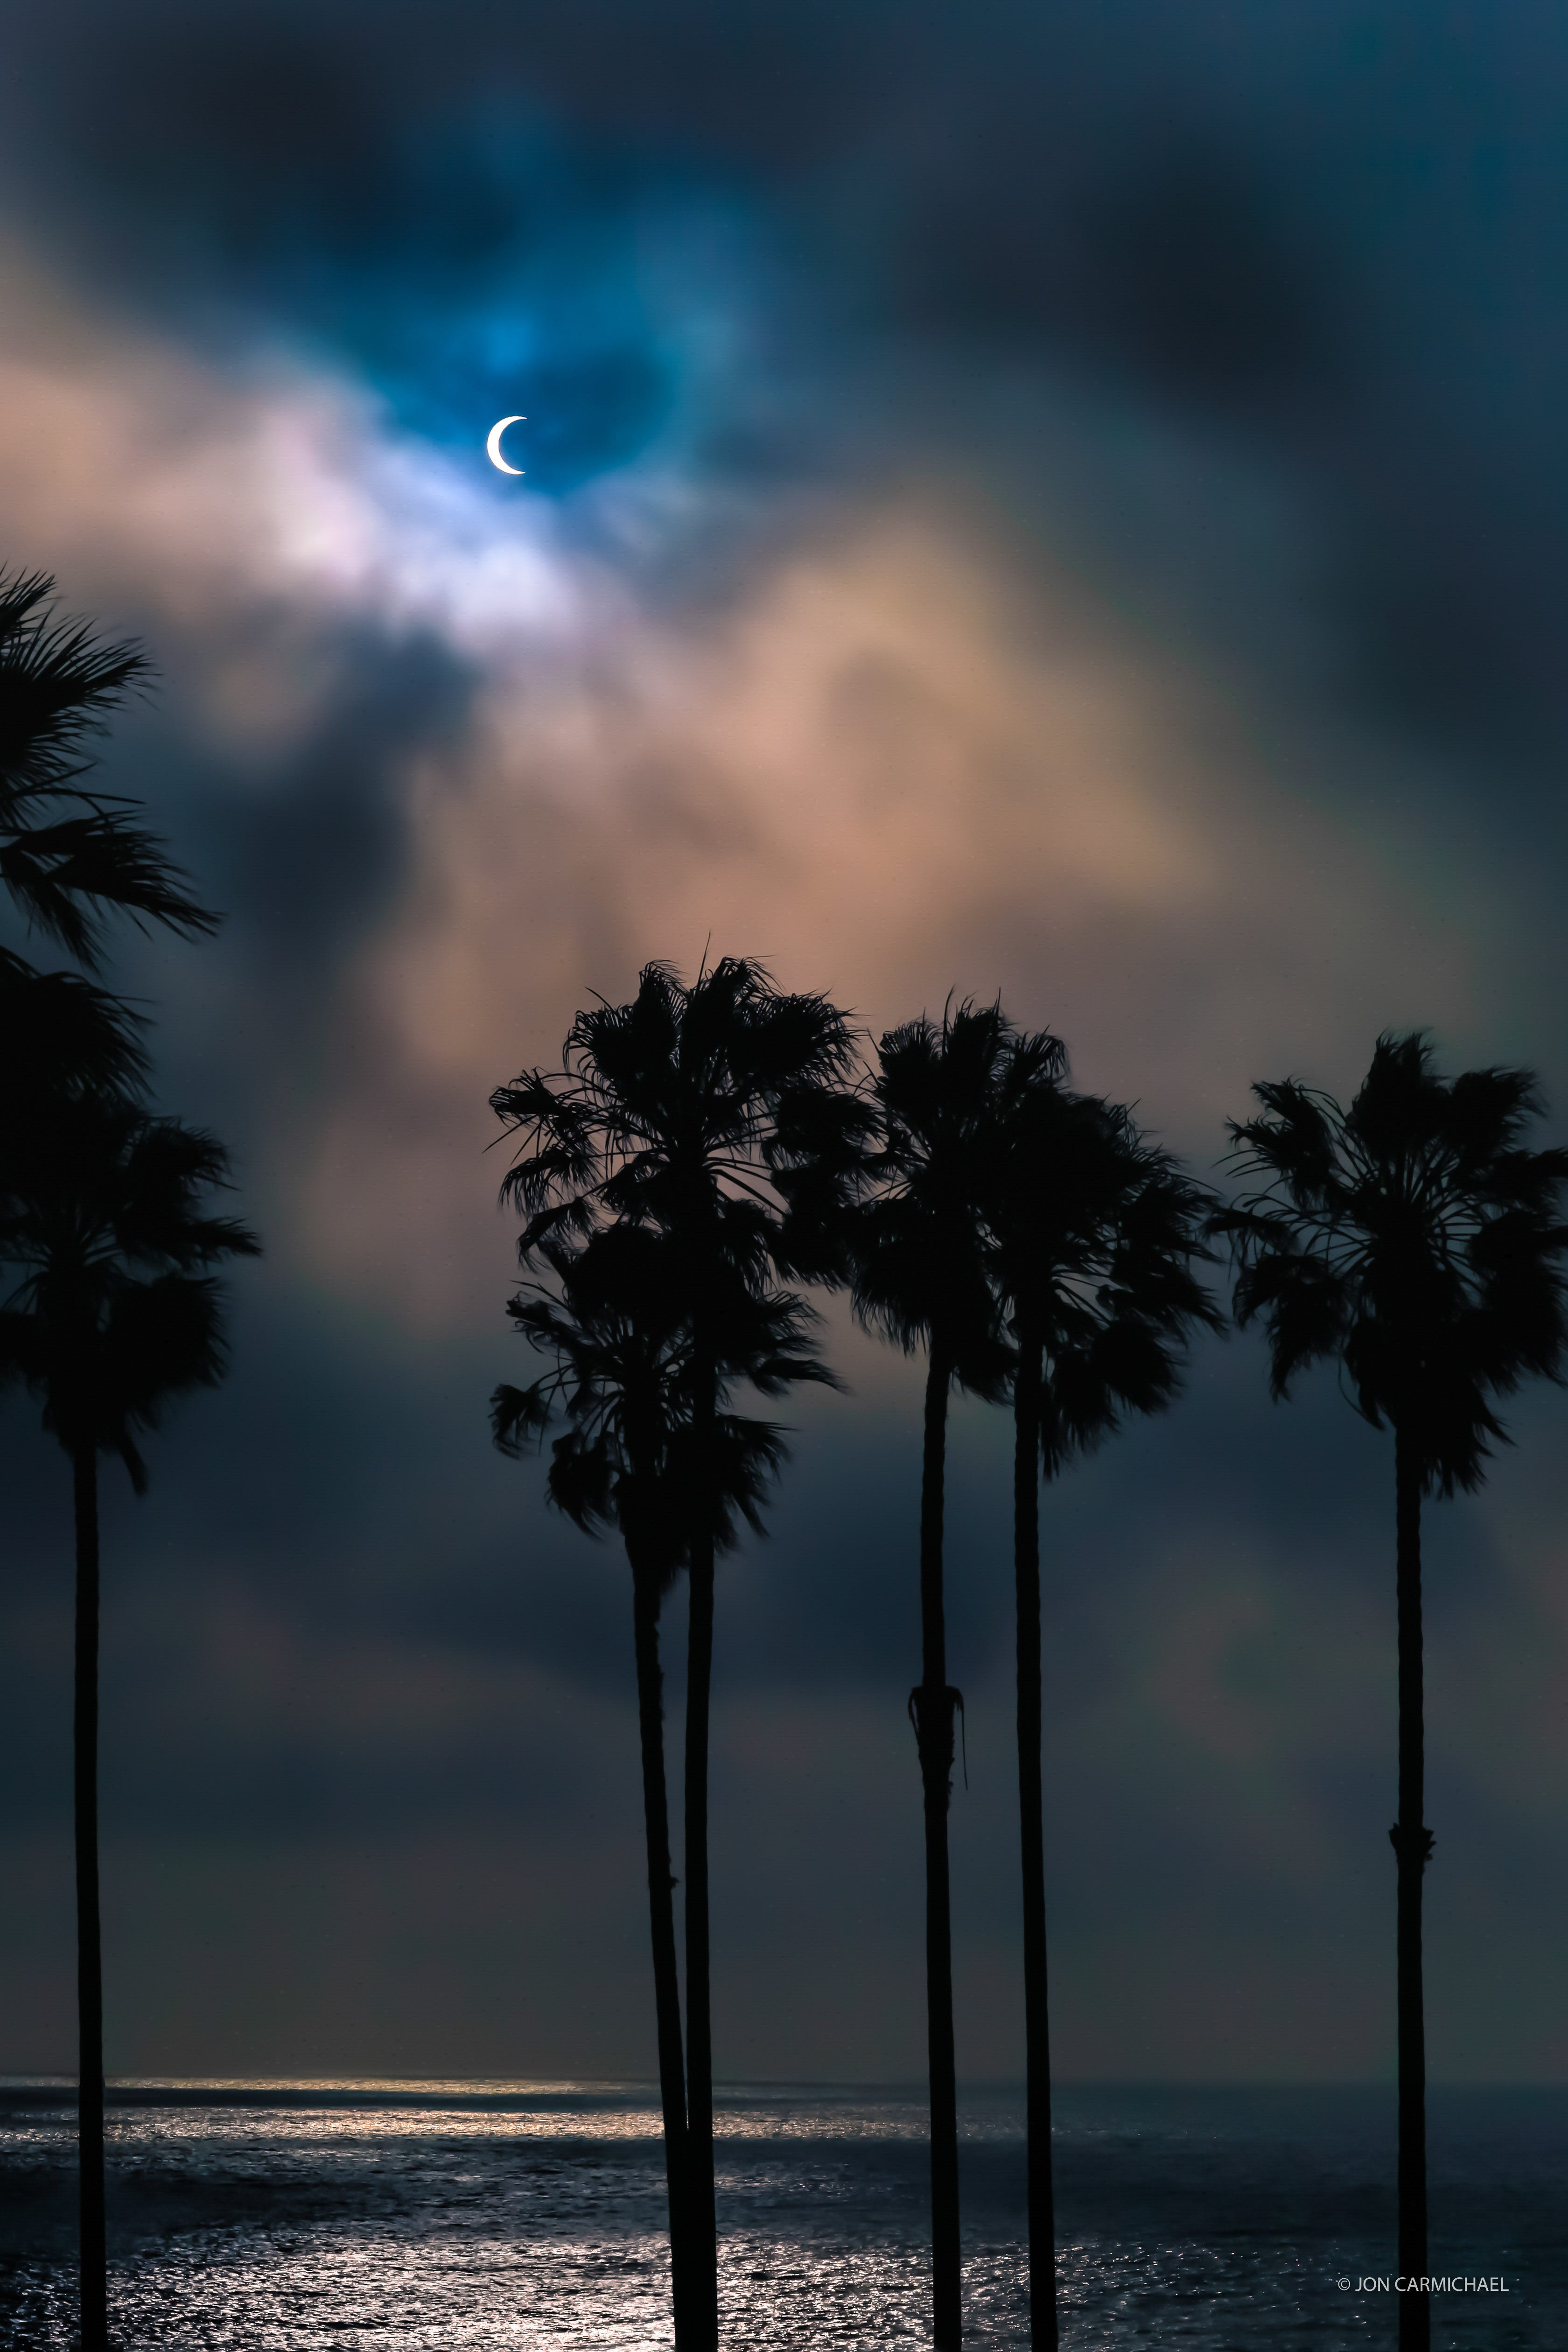 Der Mond verdunkelt teilweise die Sonne am Himmel mit Palmen und dem Meer im Vordergrund.